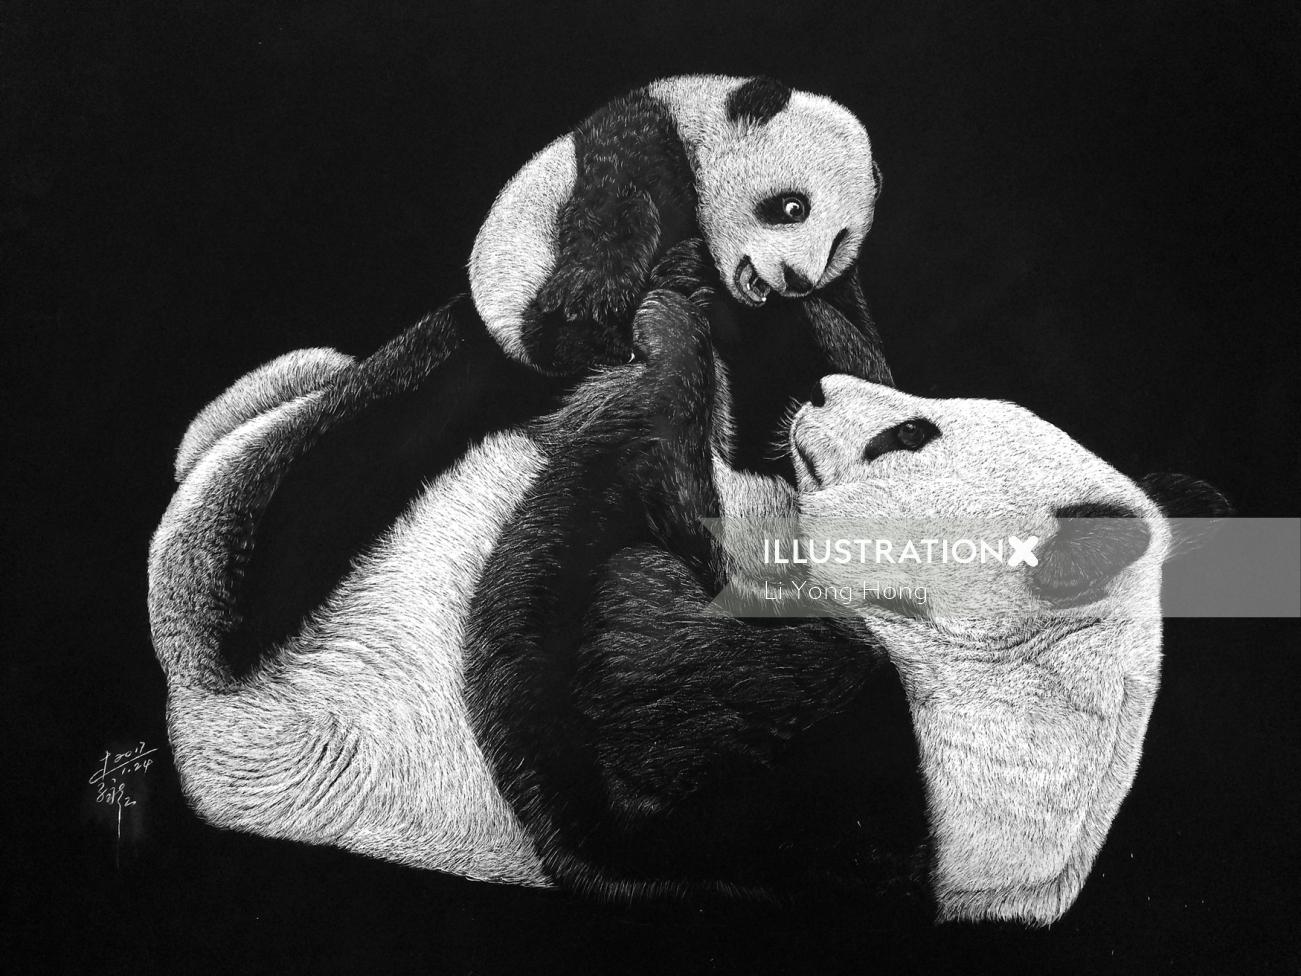 Os pandas adoram ilustração a preto e branco